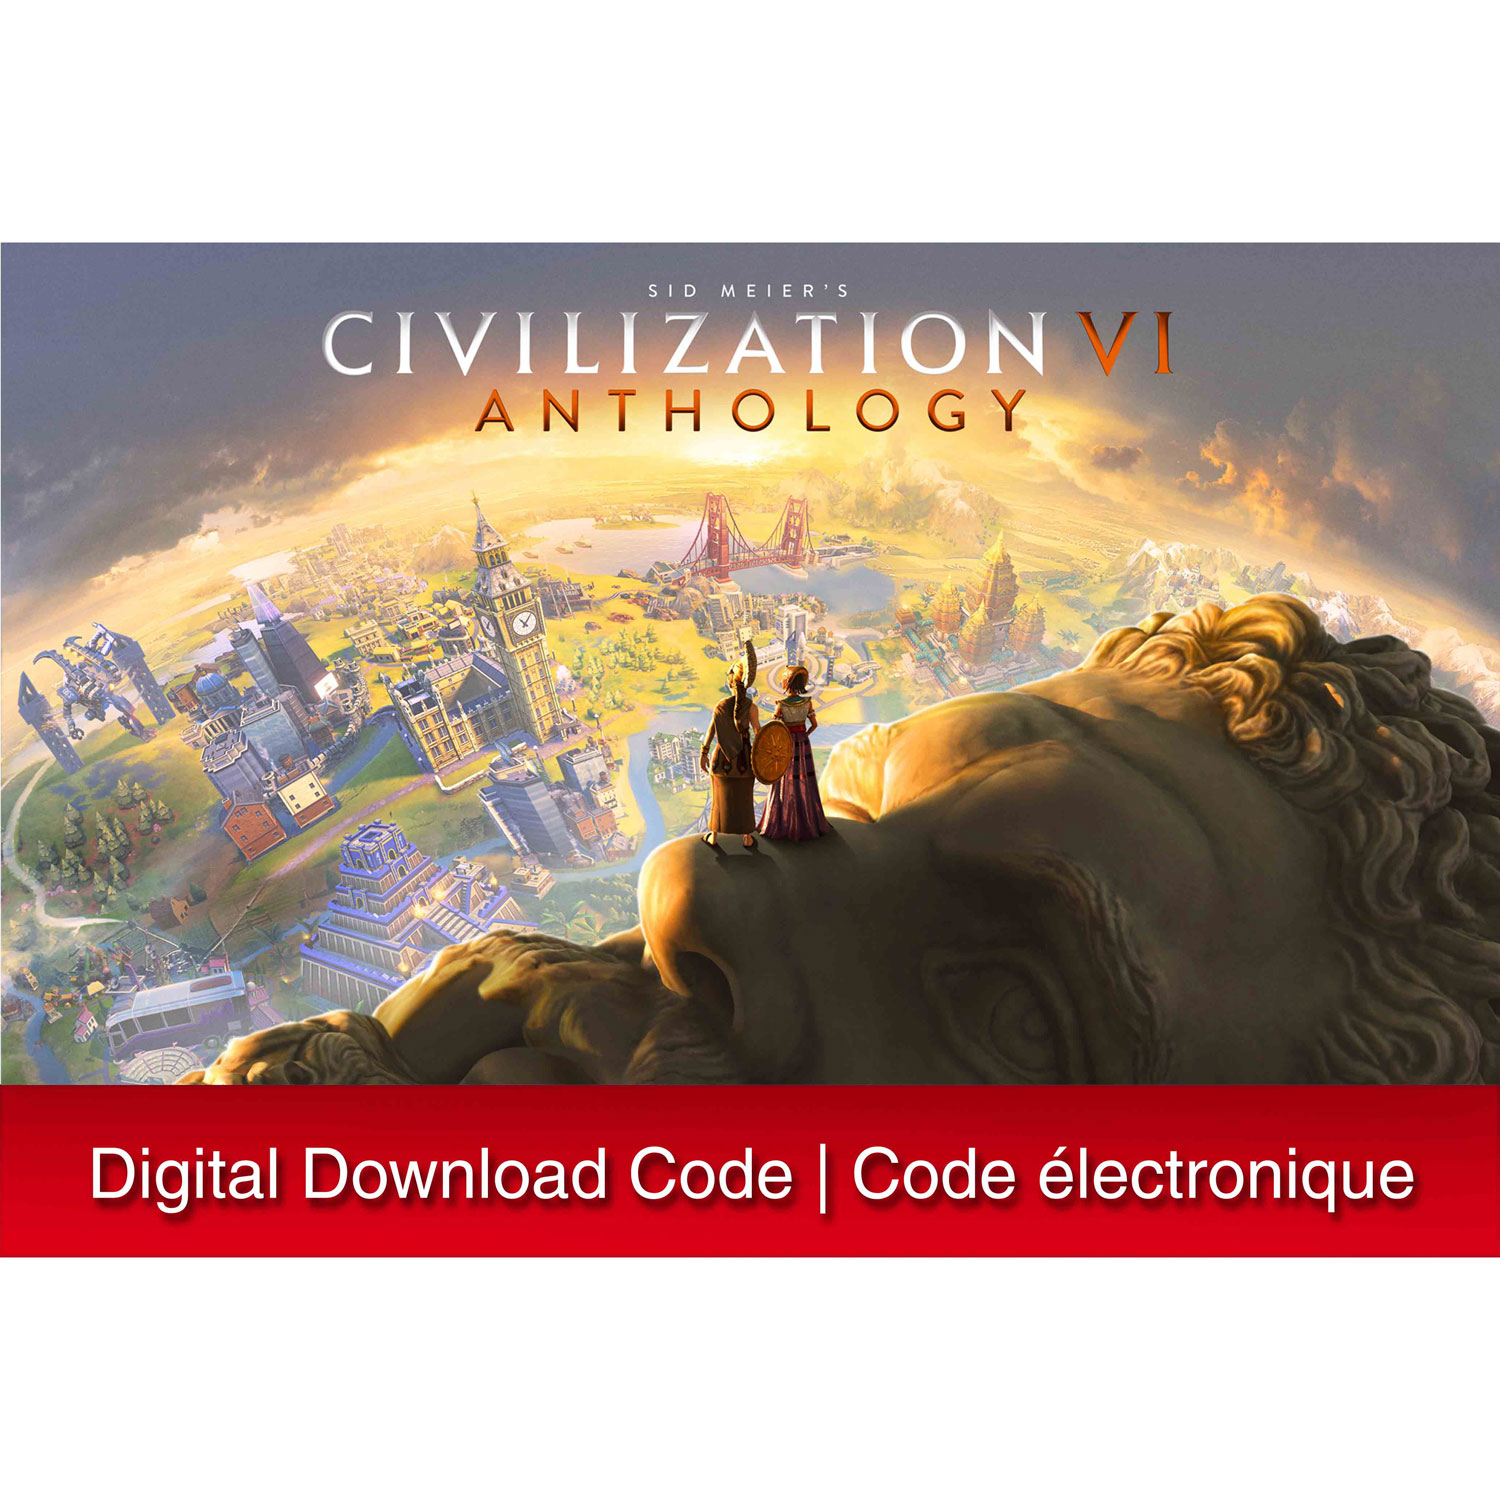 Sid Meier's Civilization VI Anthology (Switch) - Digital Download